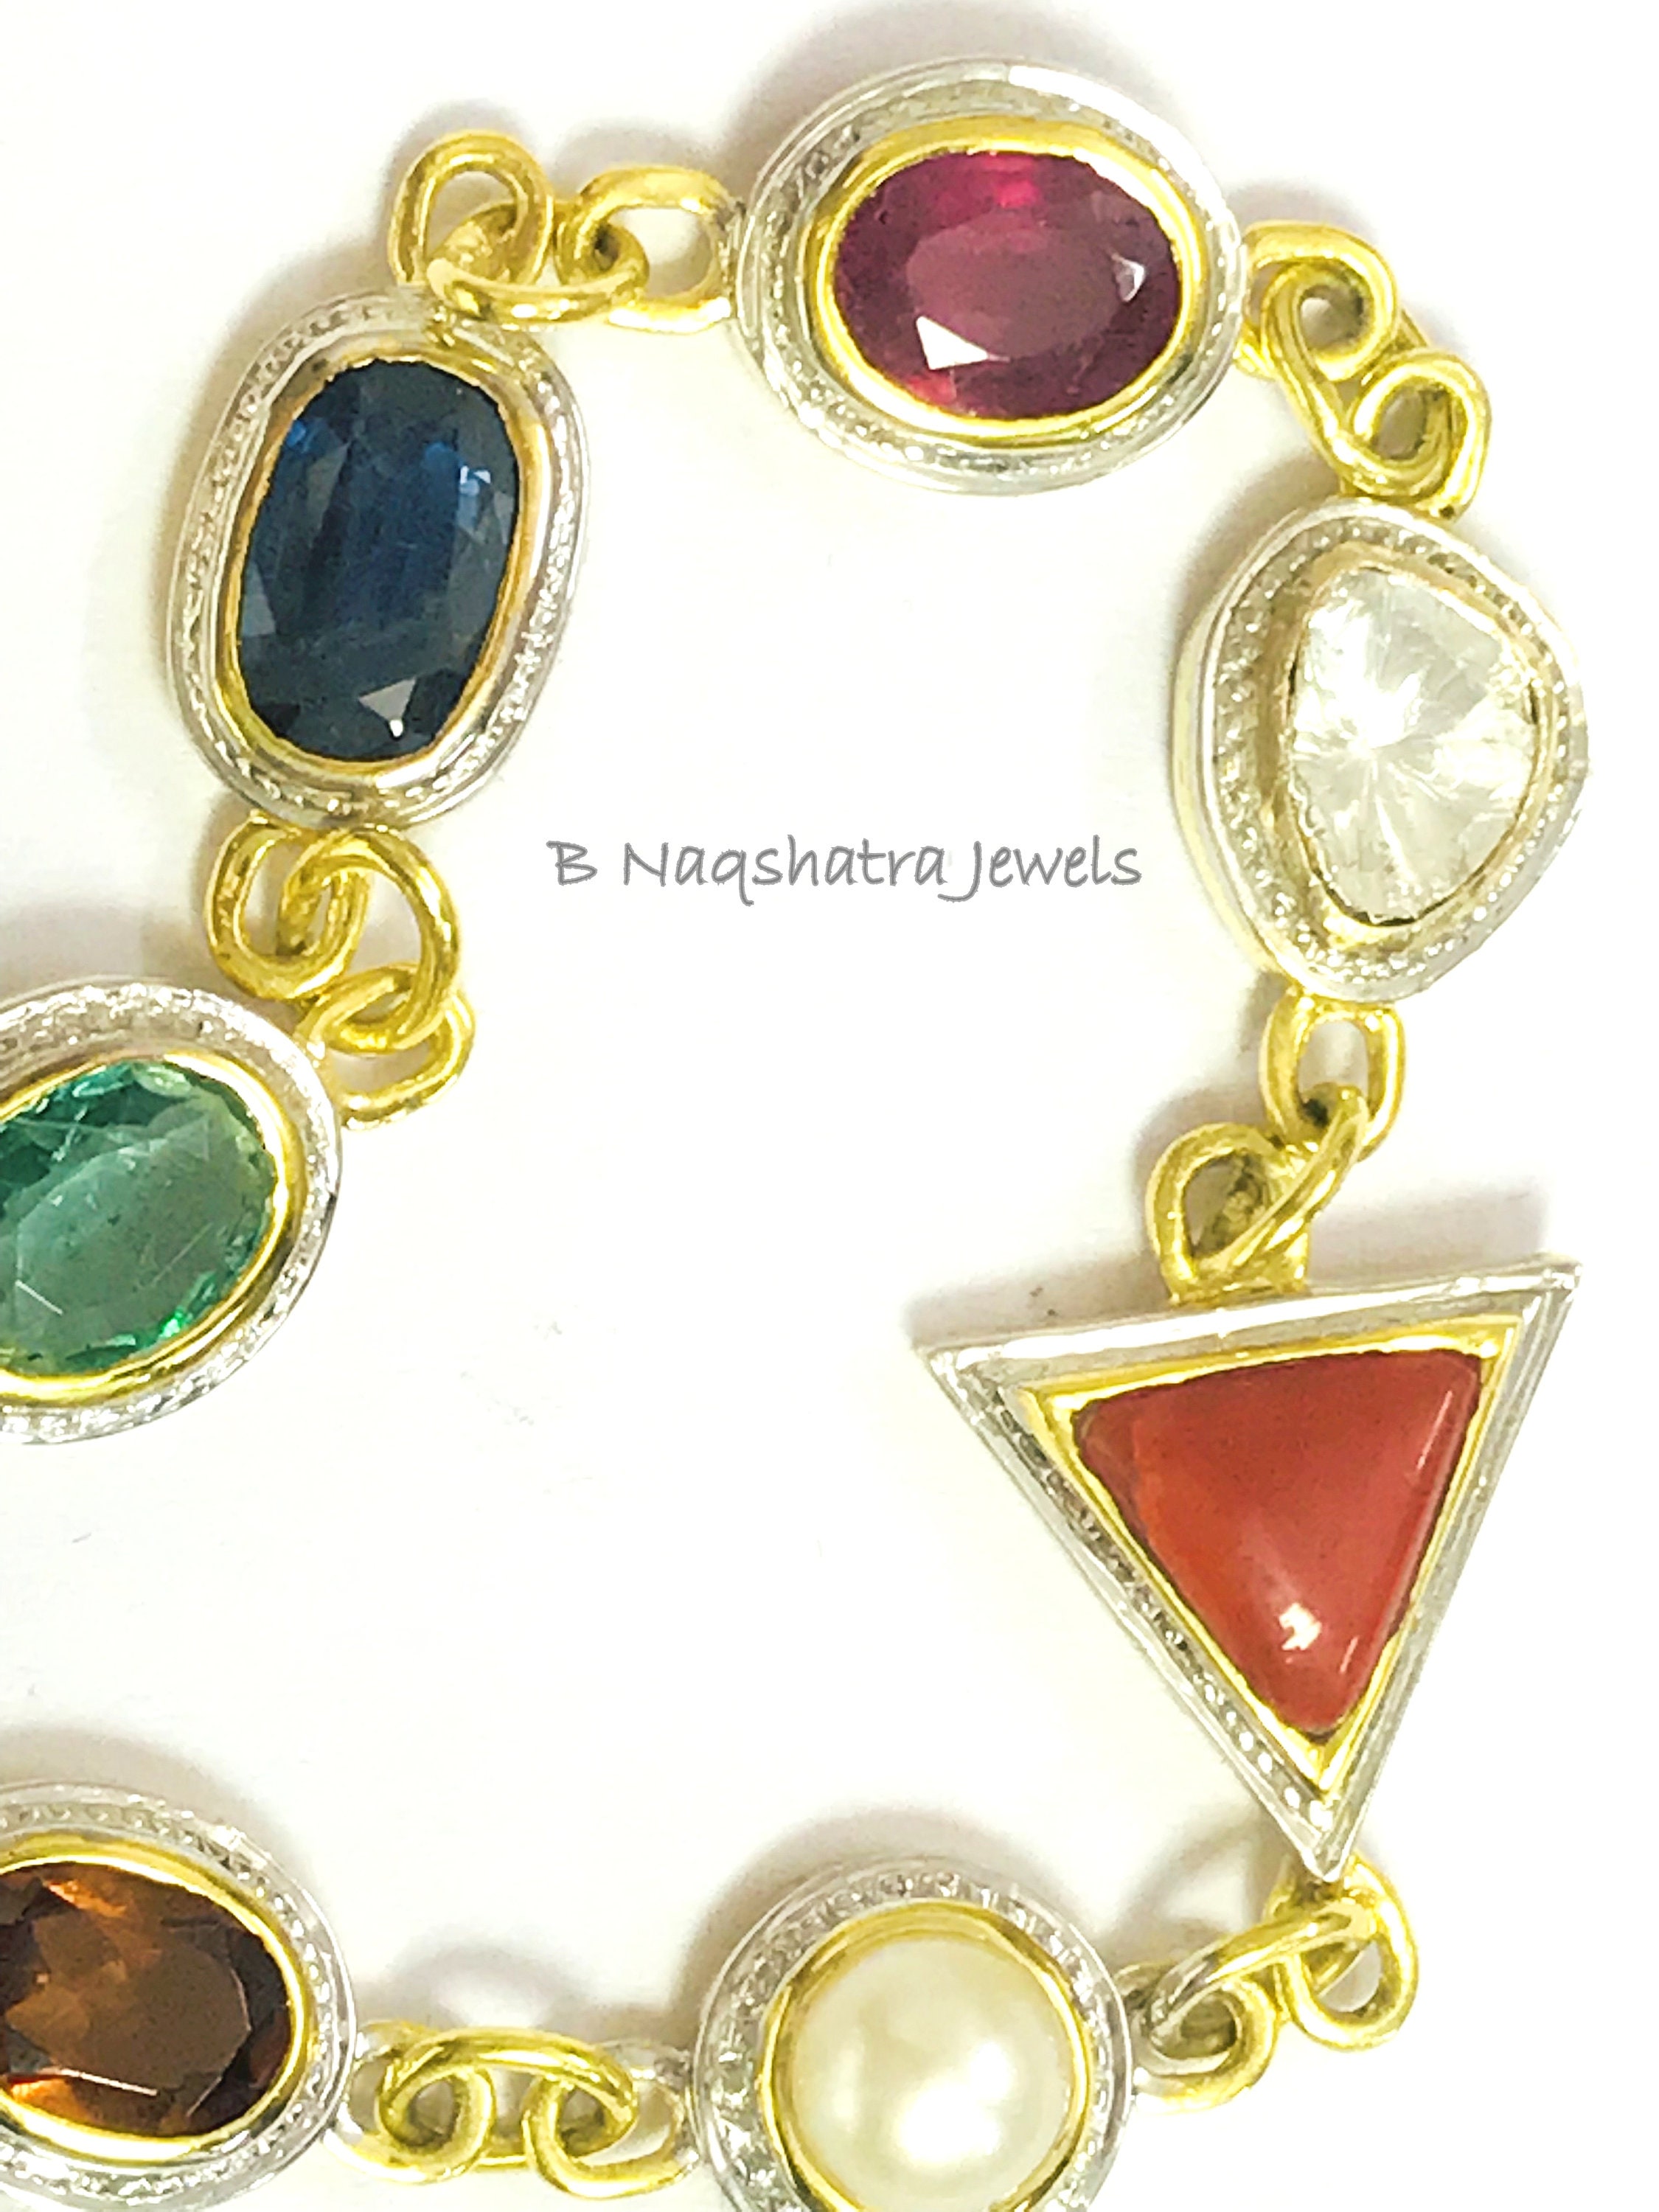 Navratna chain bracelet by Pippa Small | Finematter